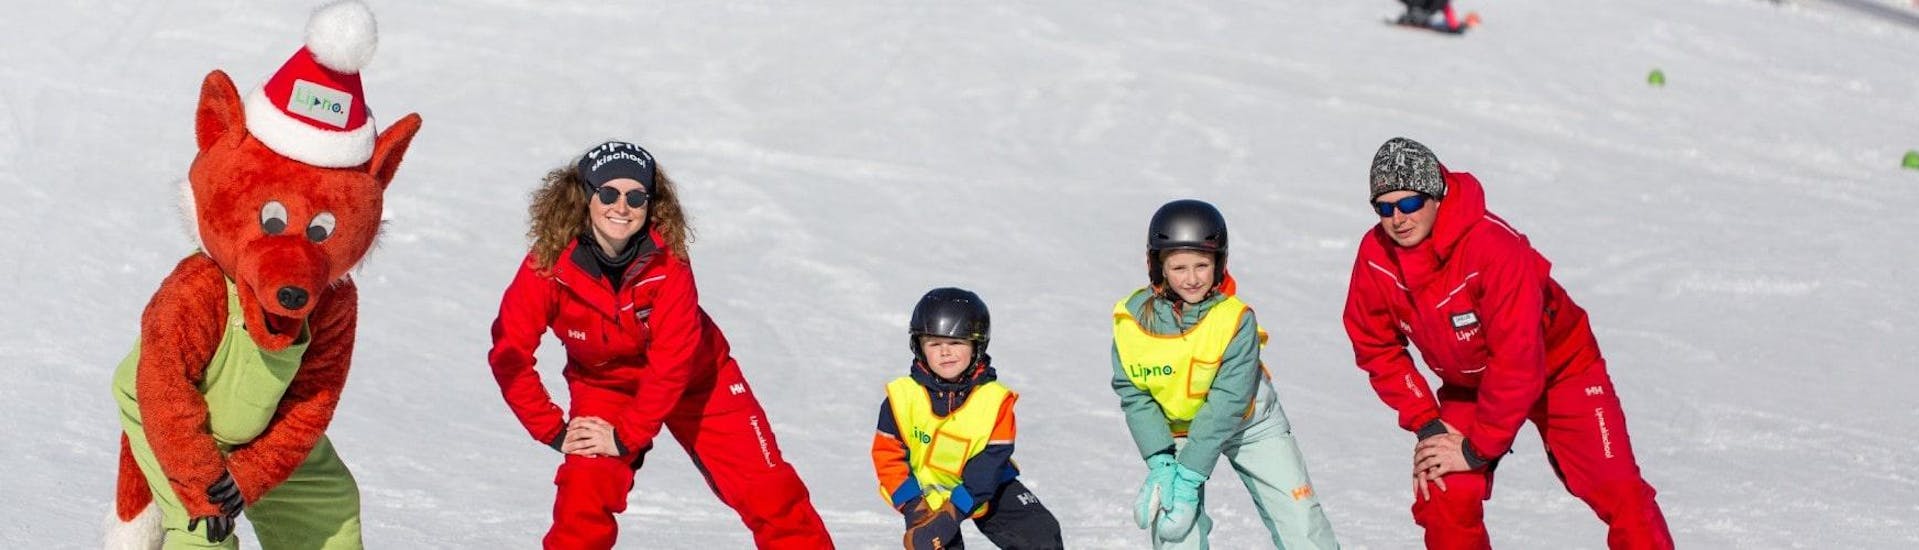 Skikurs für Kinder (6-15 Jahre) - Gruppenunterricht.